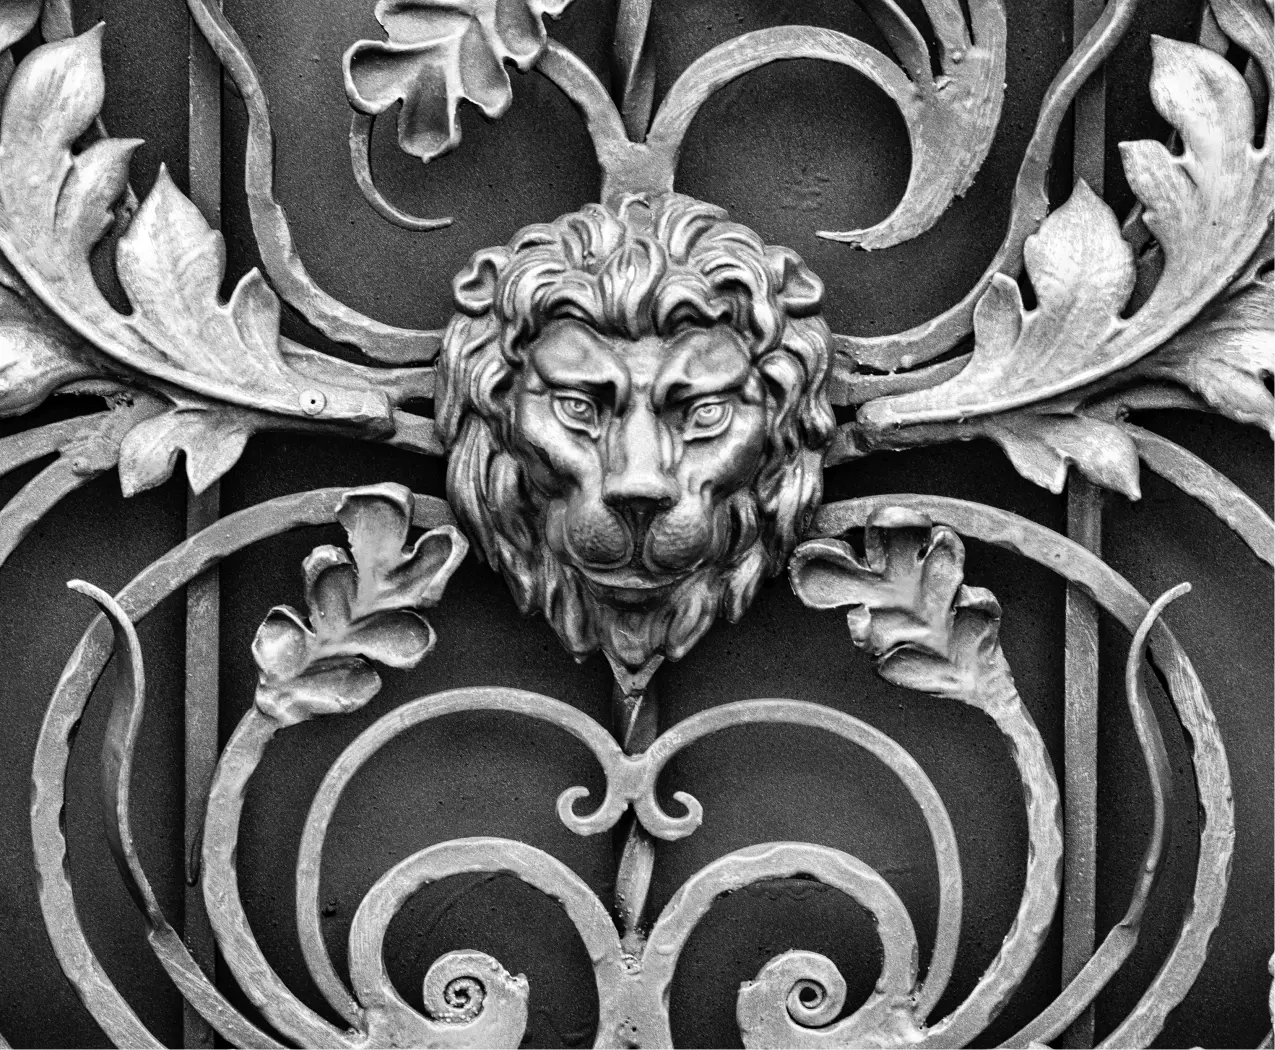 Fairway Lion Head Gate